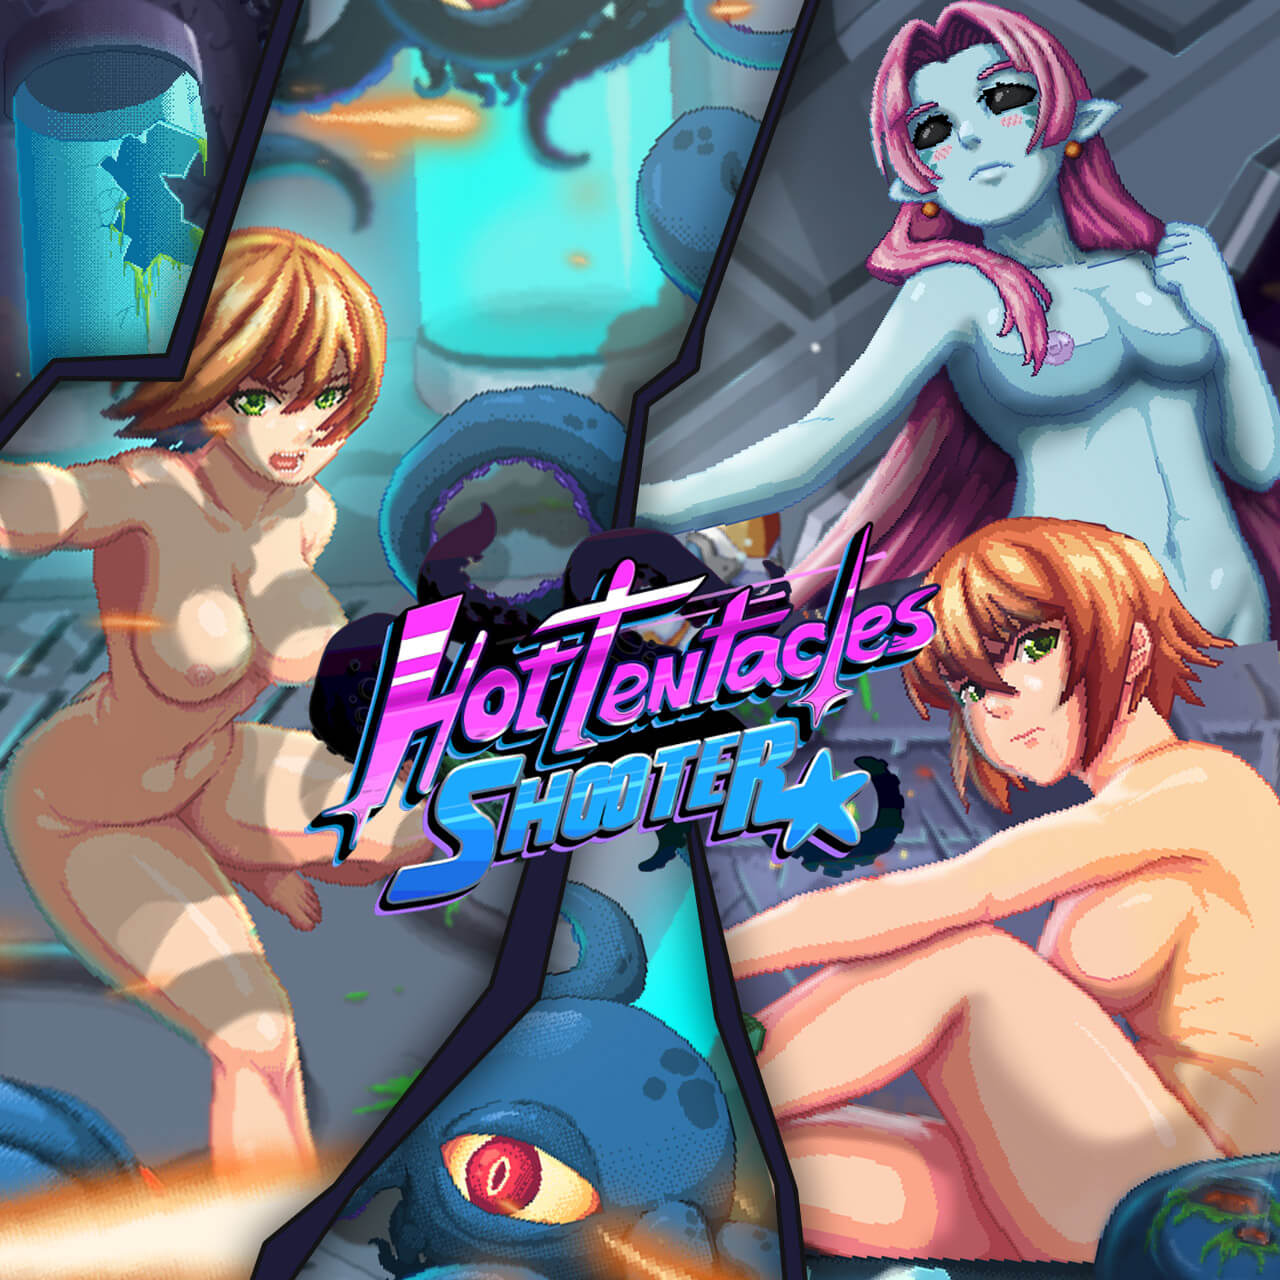 Hot Tentacle Hentai - Hot Tentacles Shooter - Retro Sex Game | Nutaku